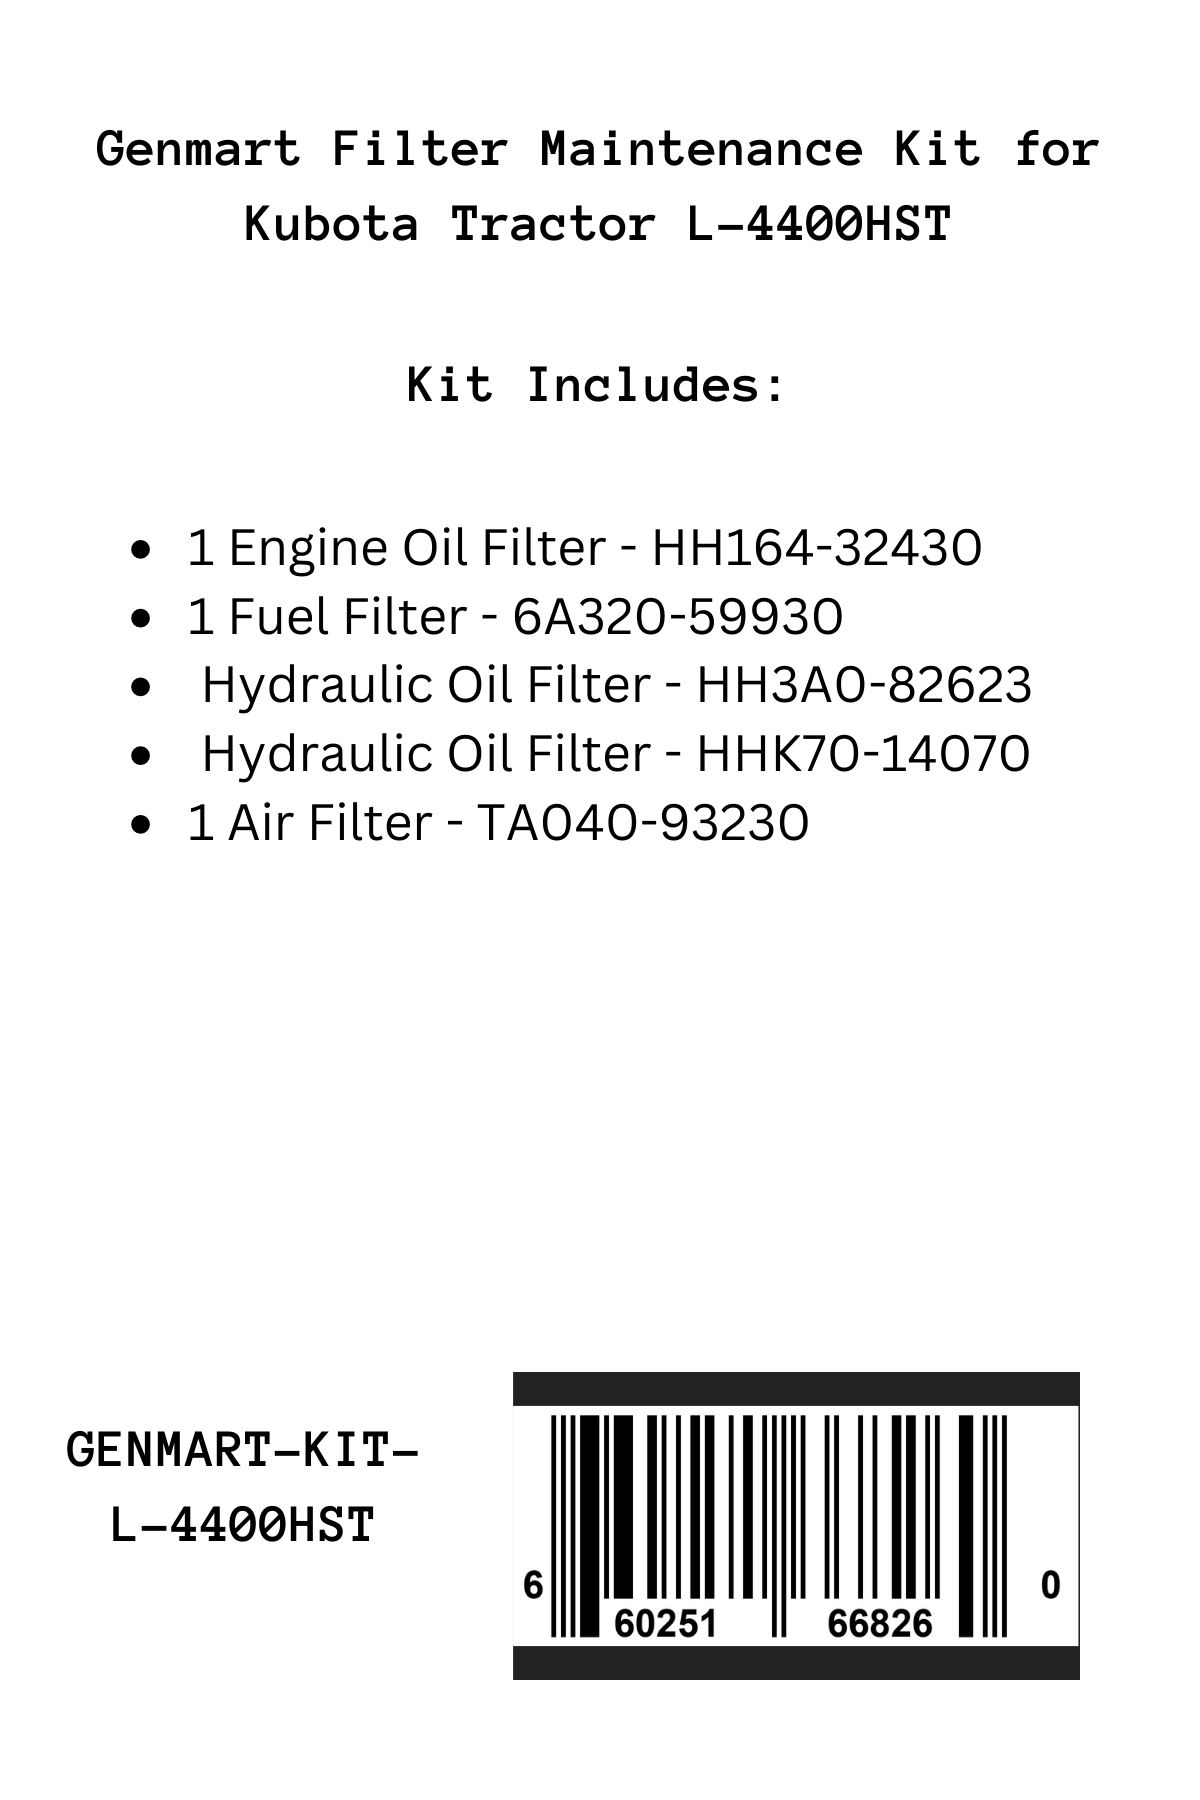 Genmart Maintenance Kit for Kubota Tractor L-4400HST